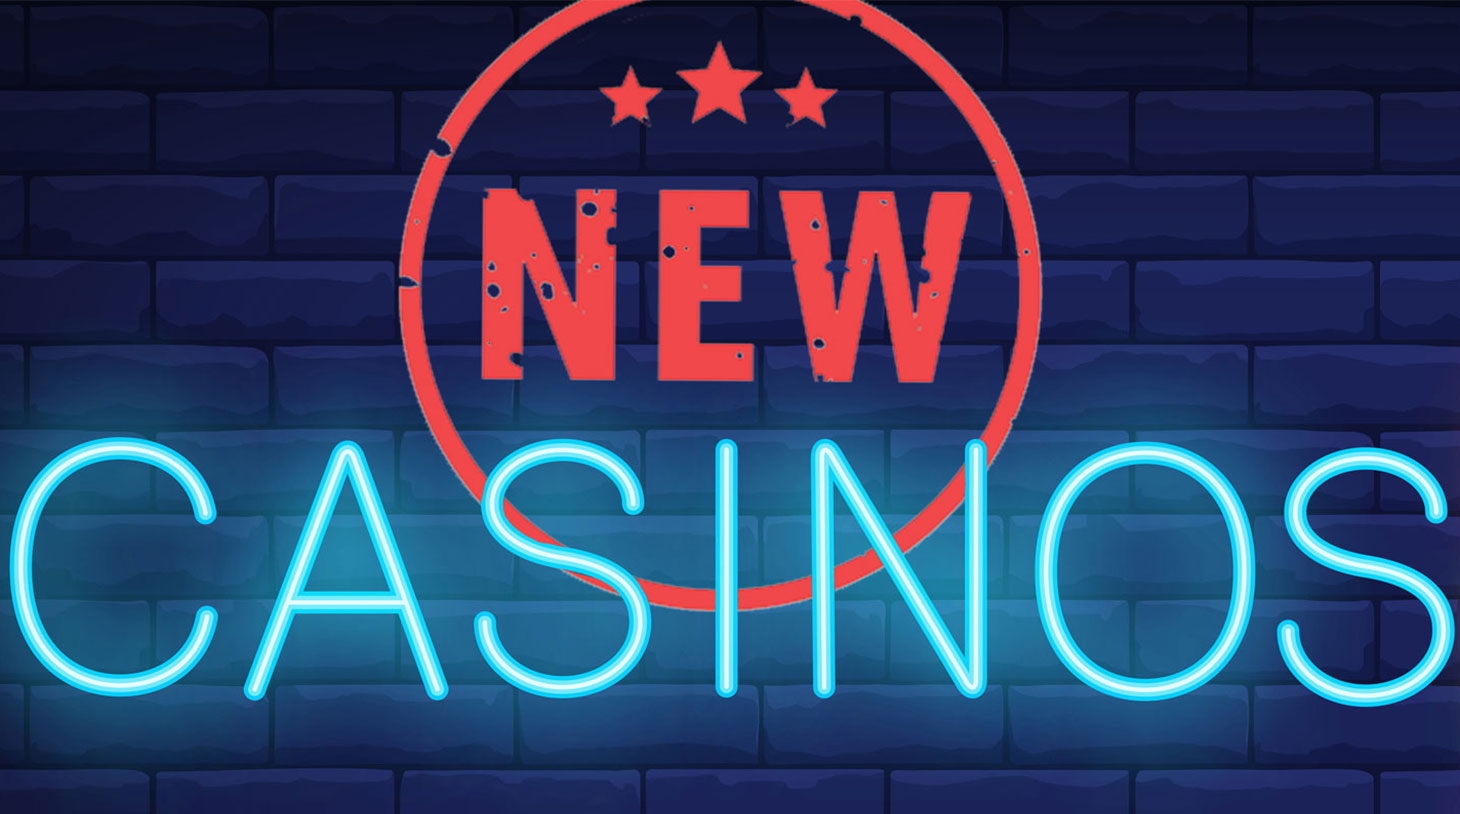 Neue Online Casinos Deutschland